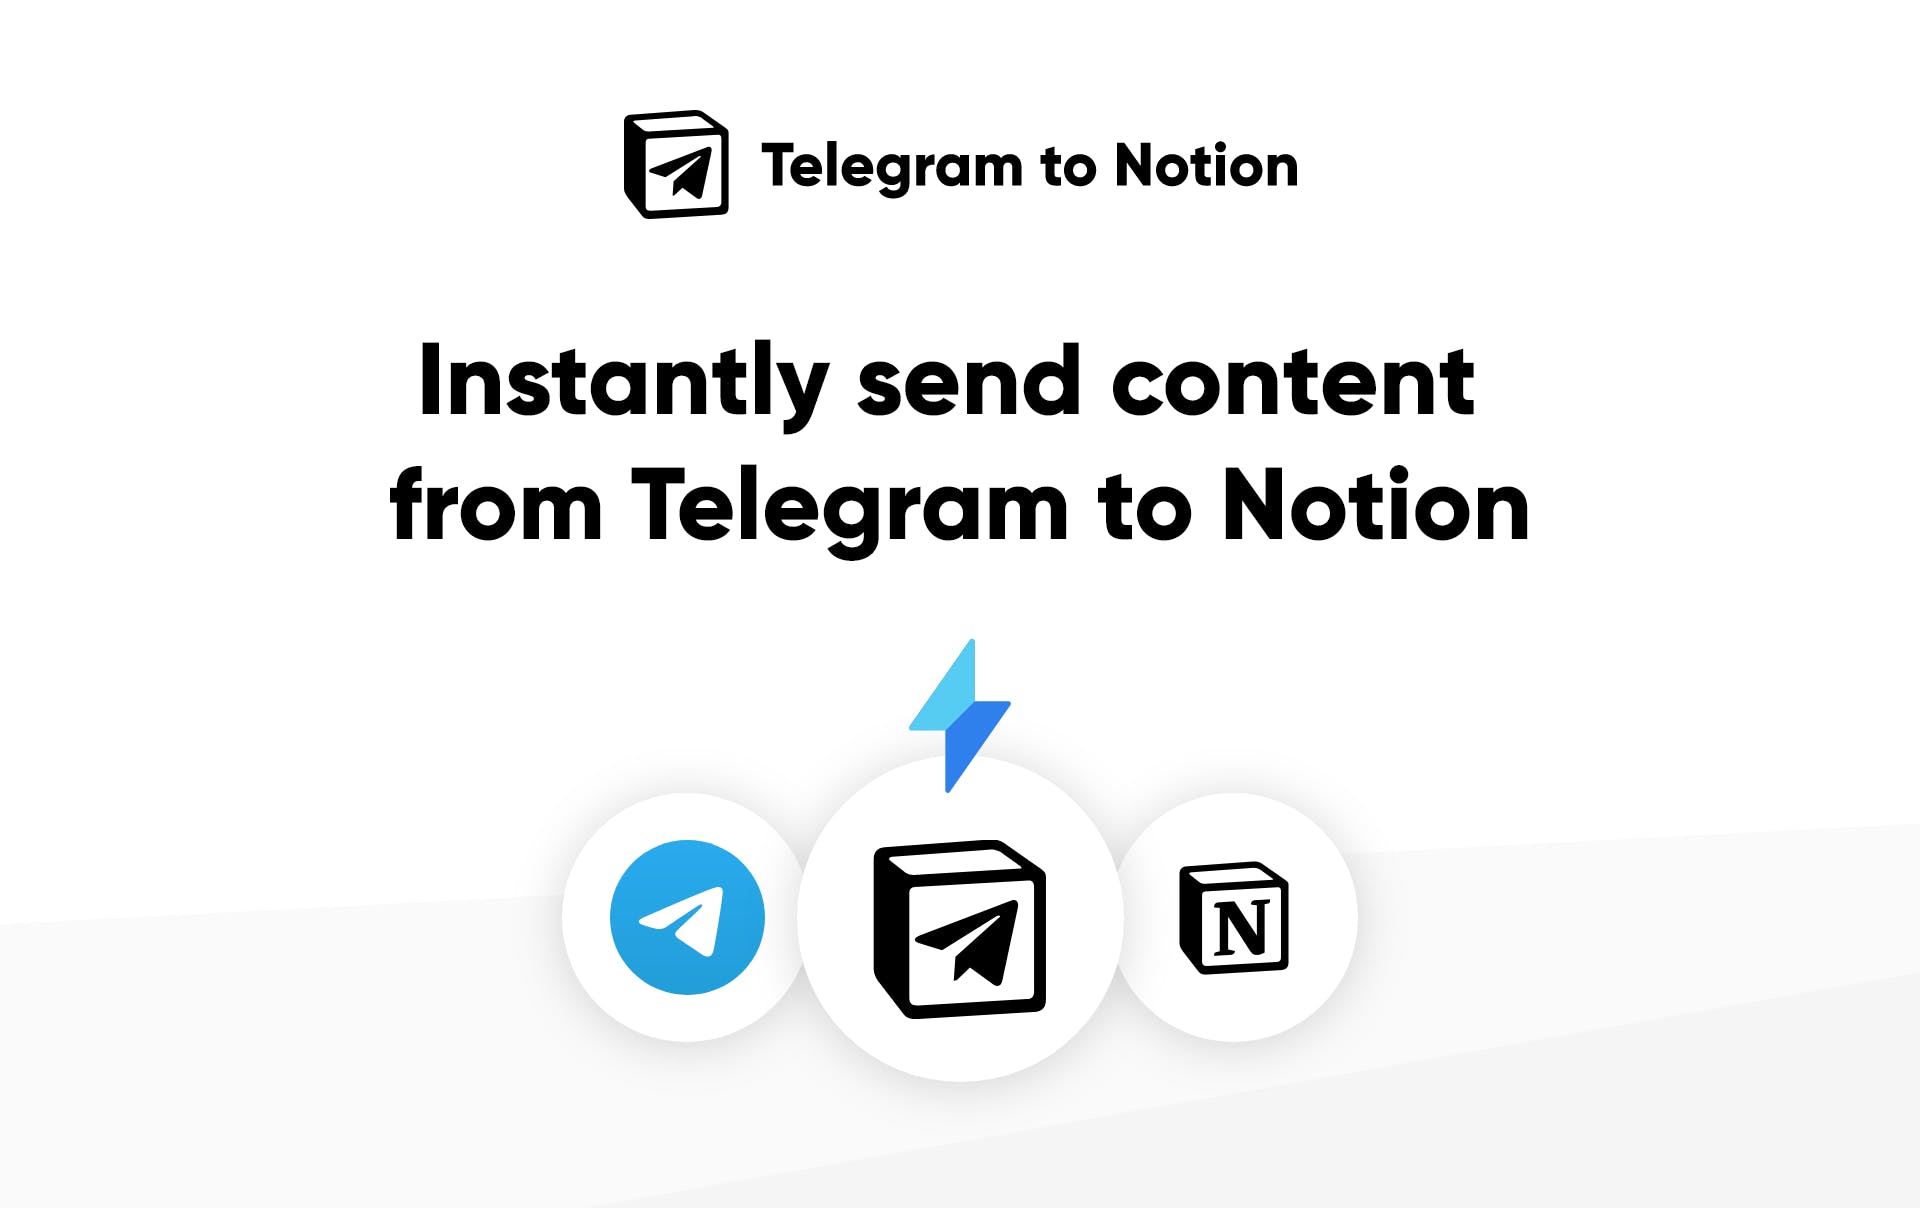 Telegram to Notion media 2